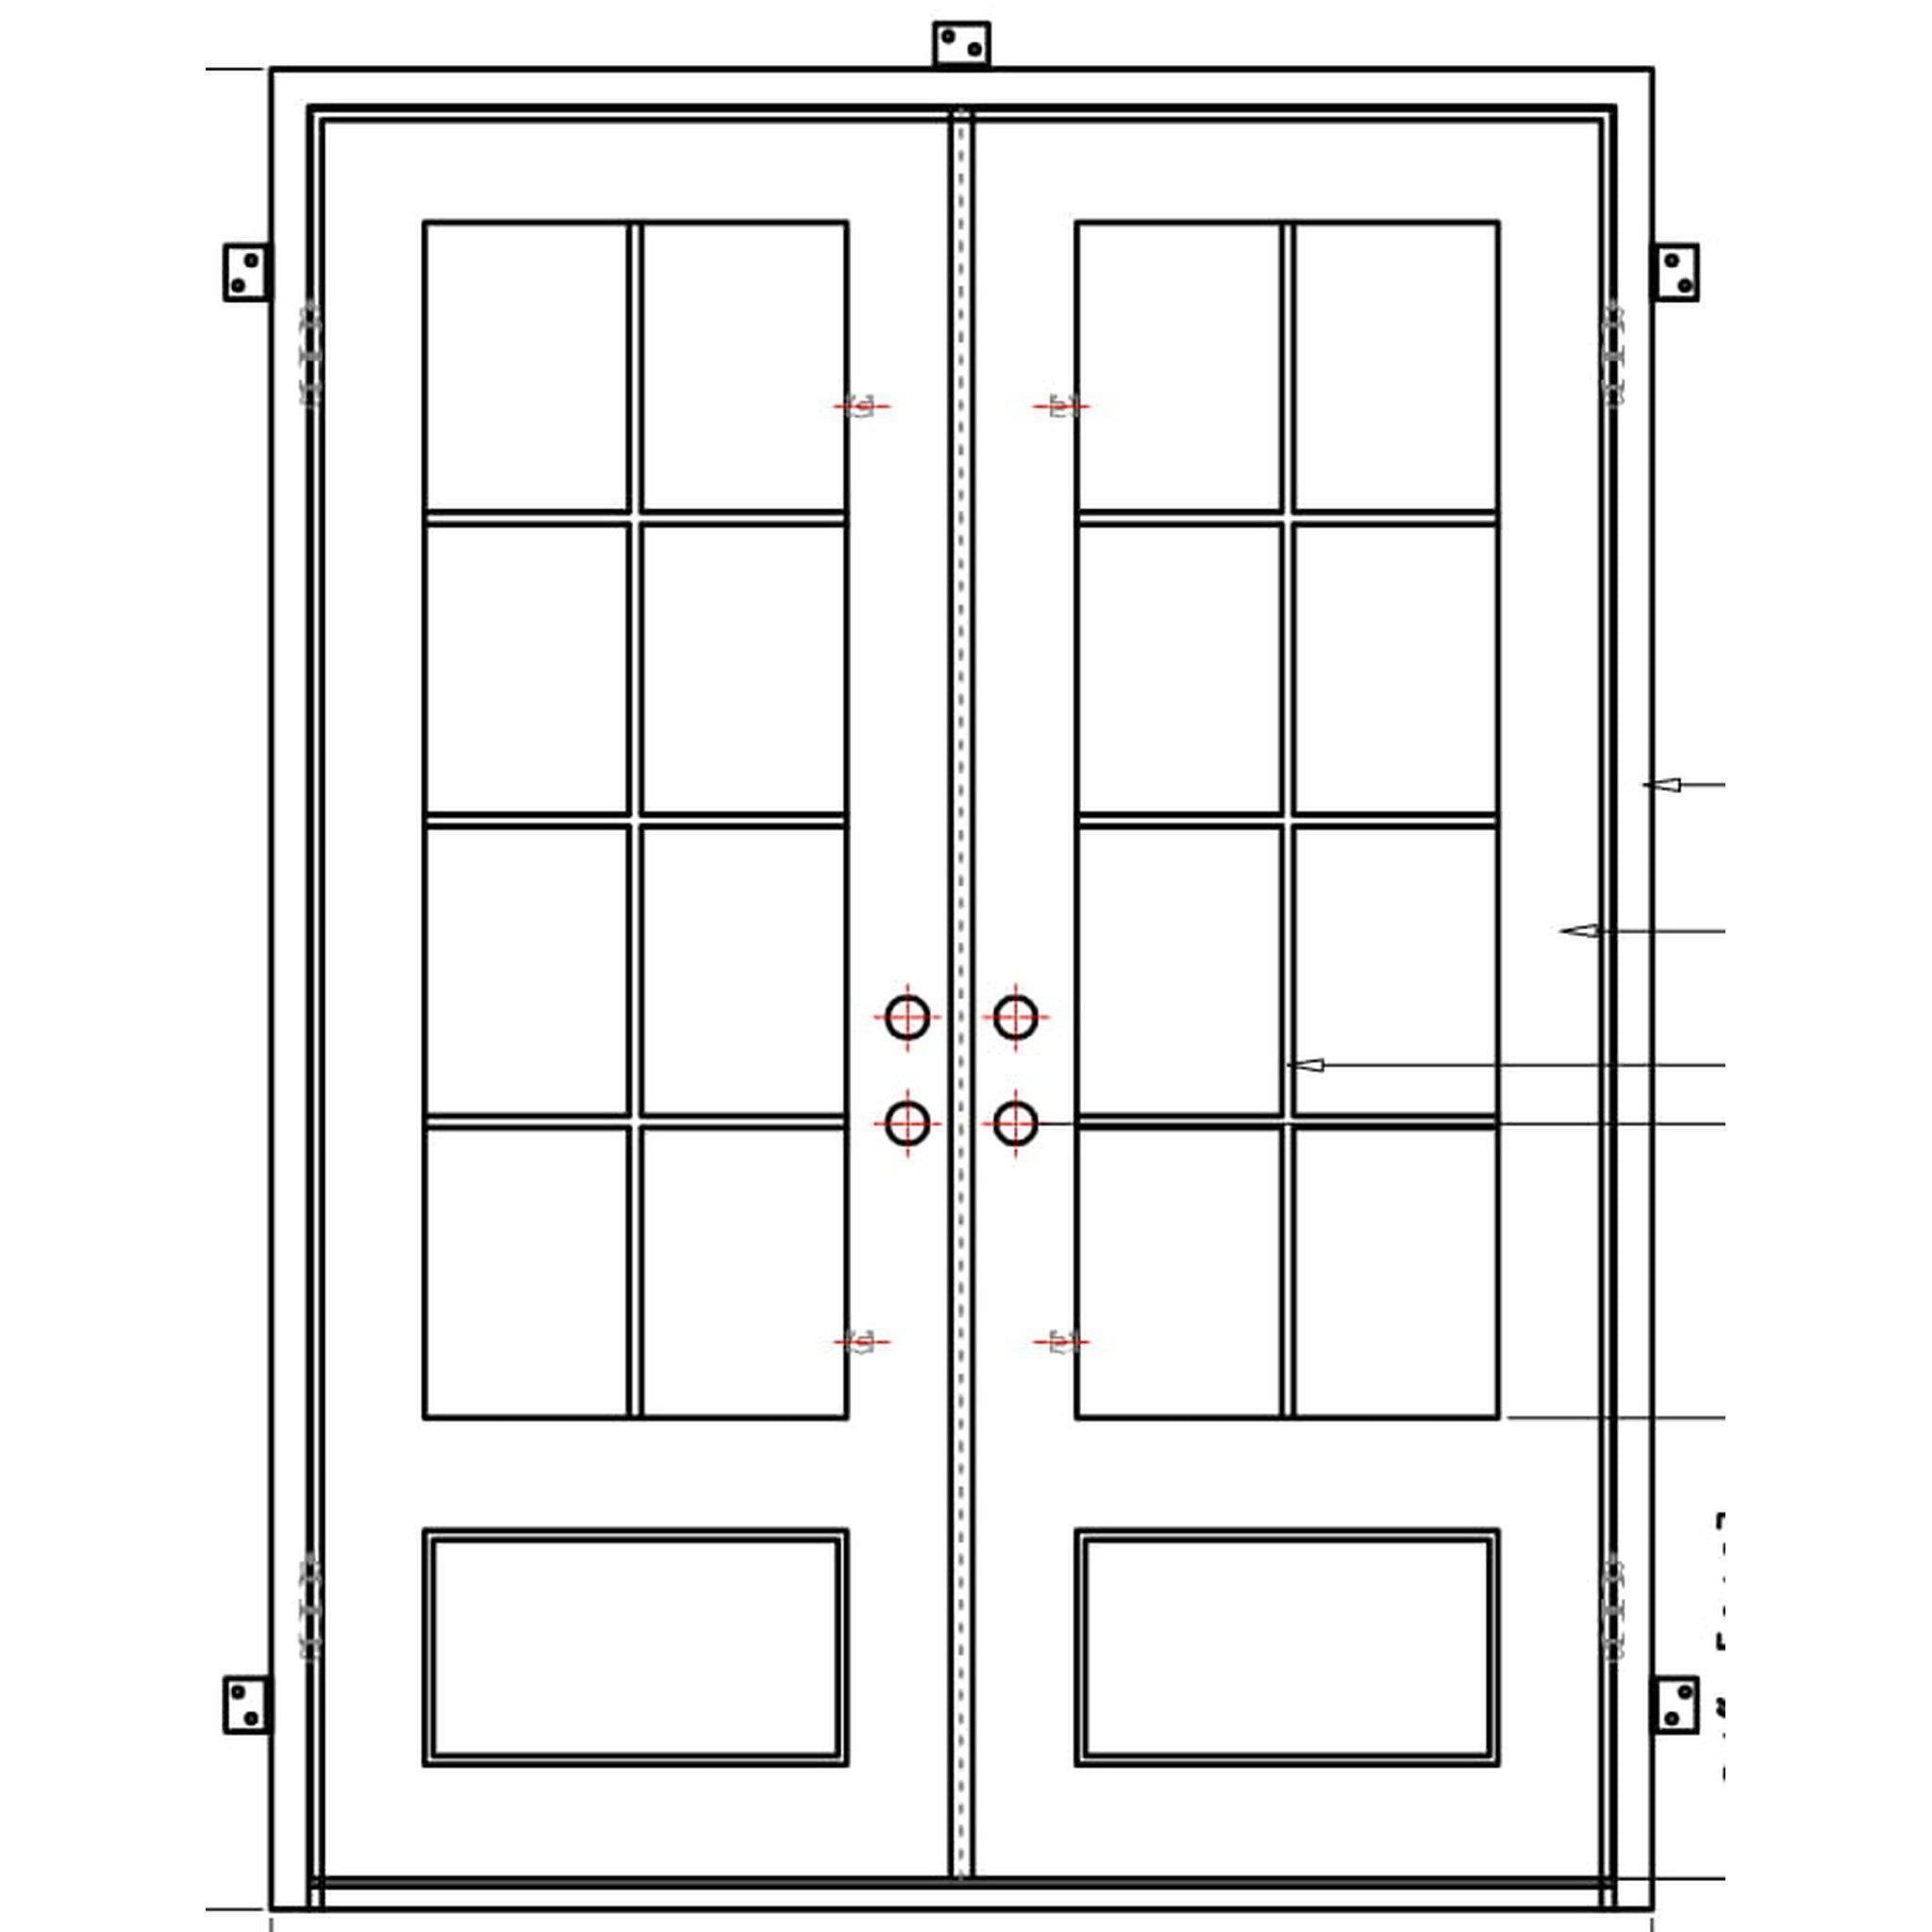 Seattle Double-Wrought Iron Doors-Black Diamond Iron Doors